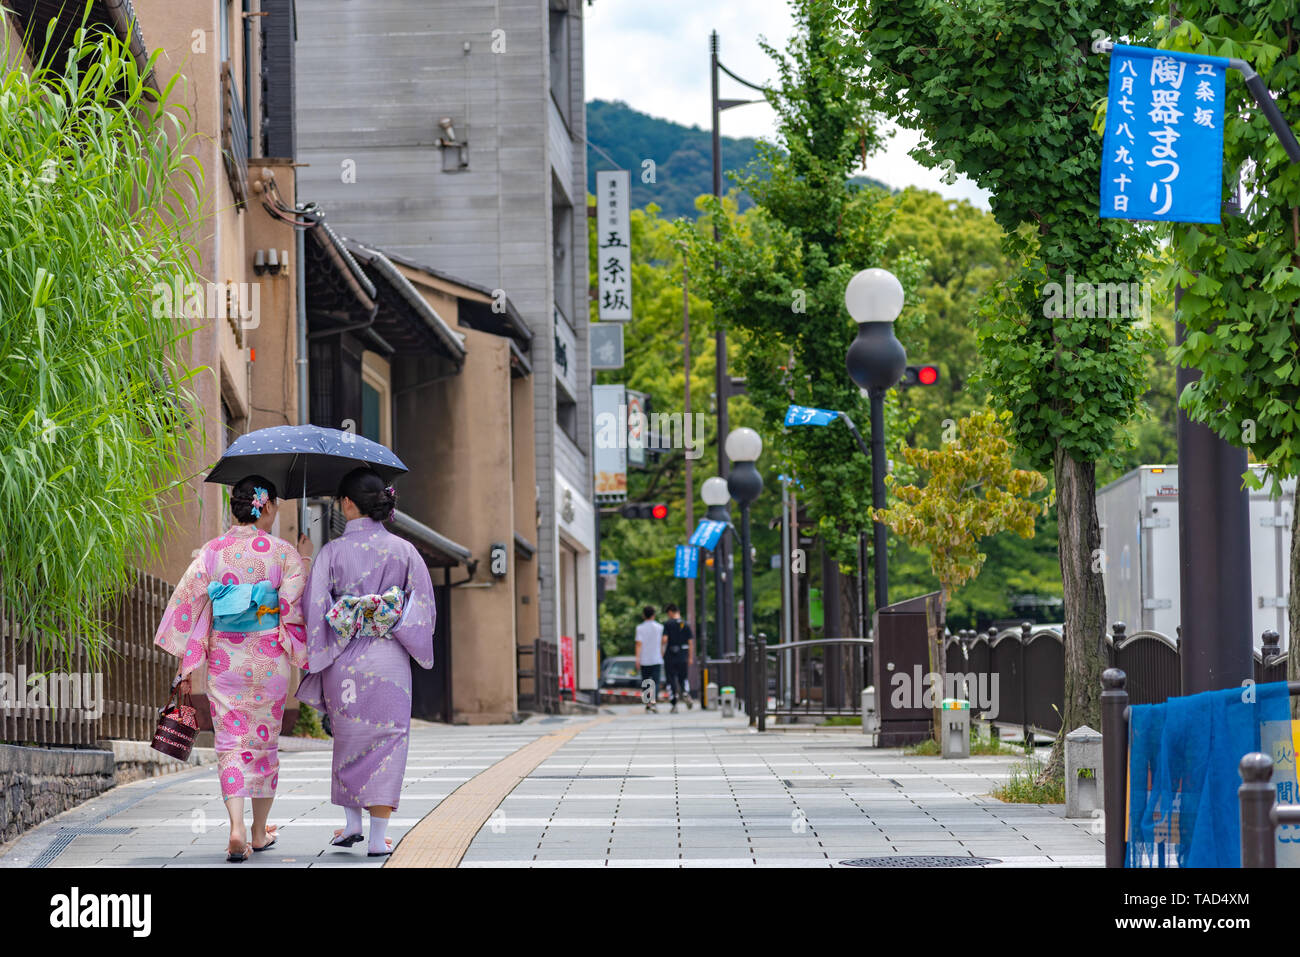 Las mujeres vestidas con el traje tradicional (kimono) caminar sobre la calle alrededor de los edificios tradicionales en Kyoto, Japón Foto de stock